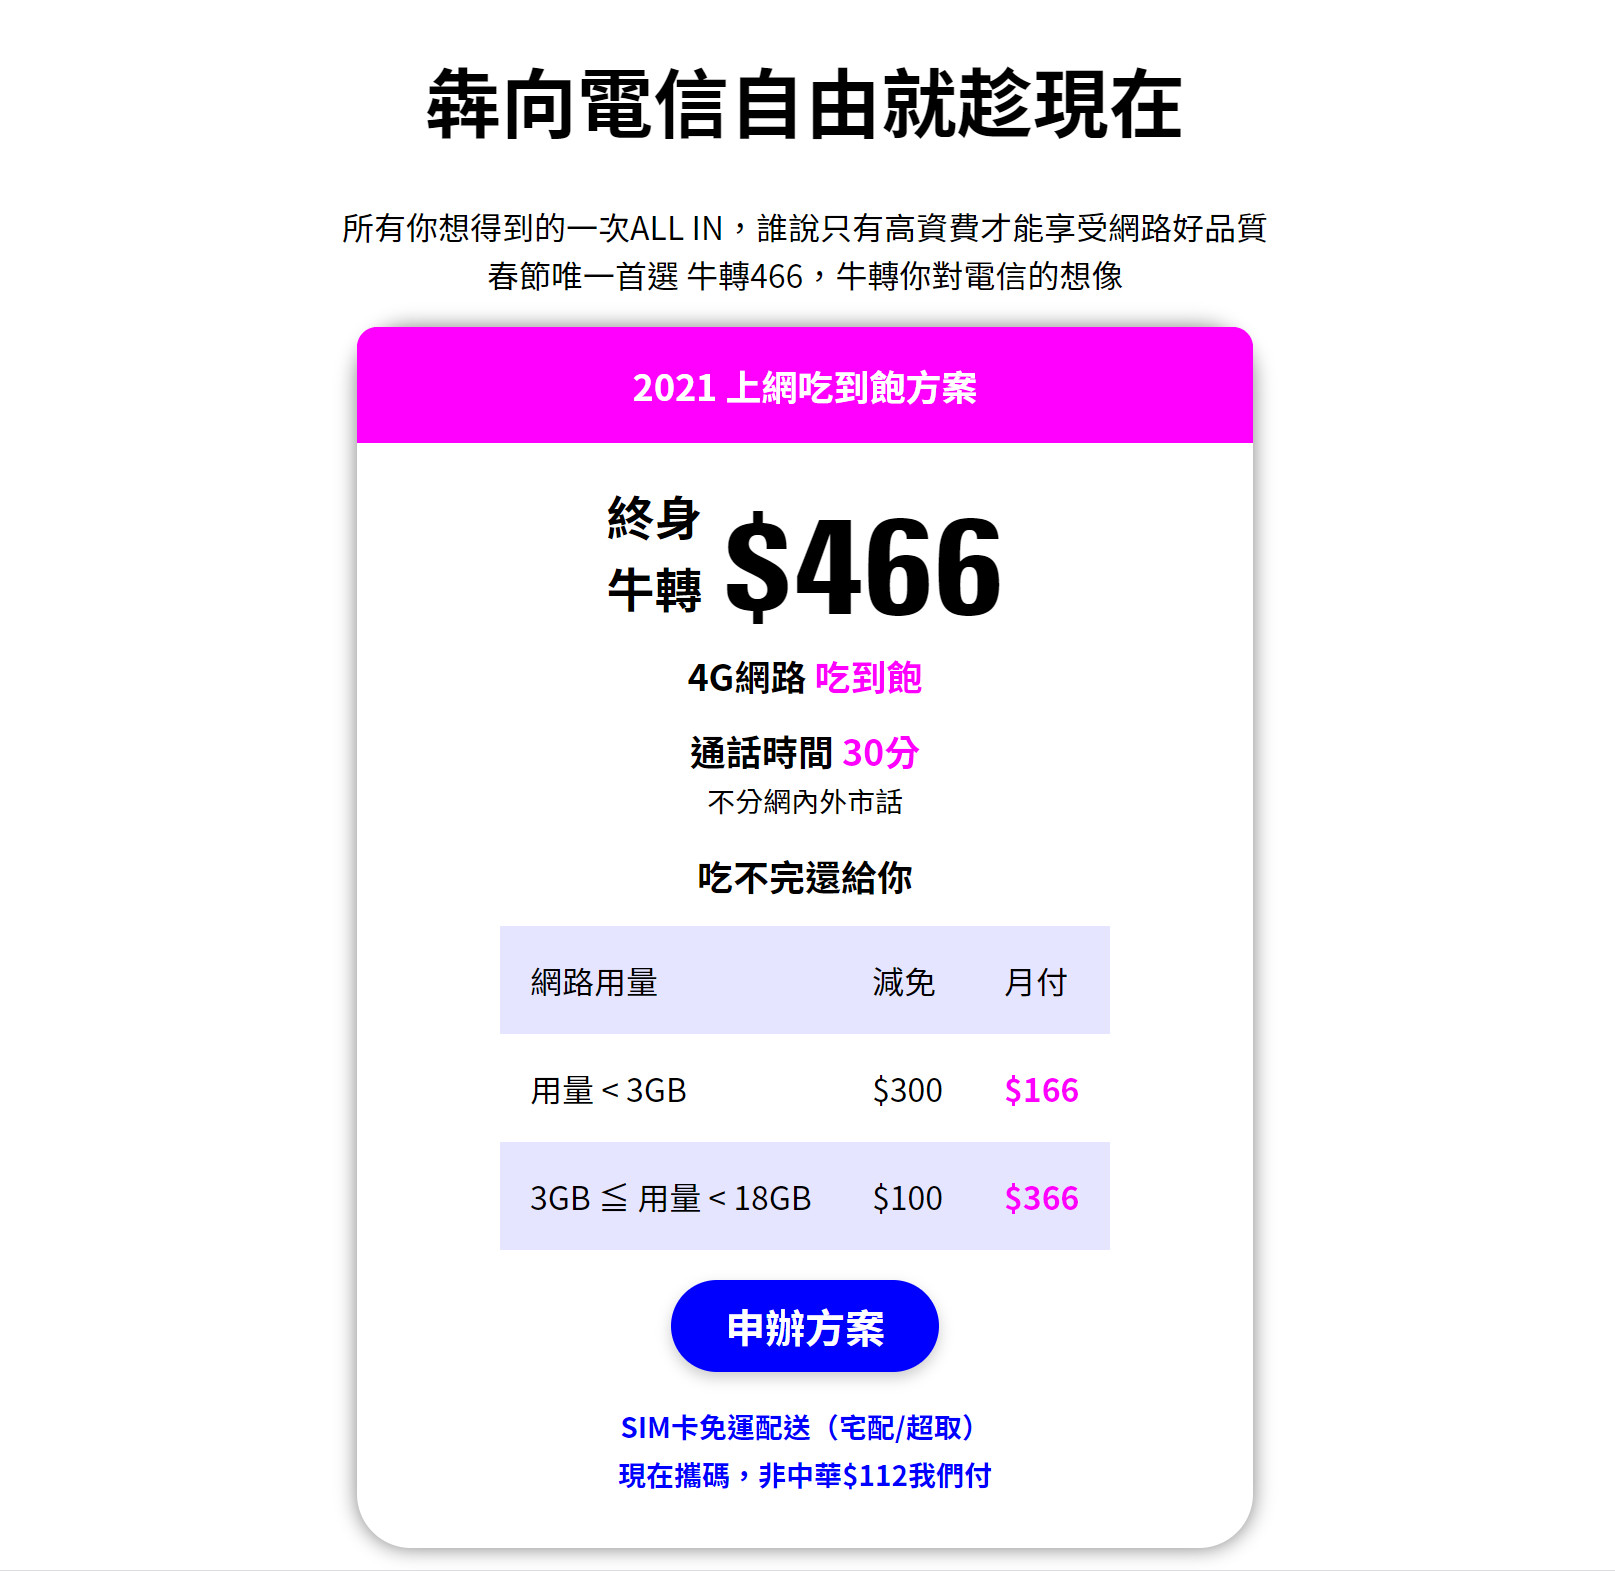 【無框行動】新春專案，中華電信大4G網路吃到飽466元，低流量只要166元!超適合搭配台灣之星雙11專案。 - 中華電信 - 敗家達人推薦